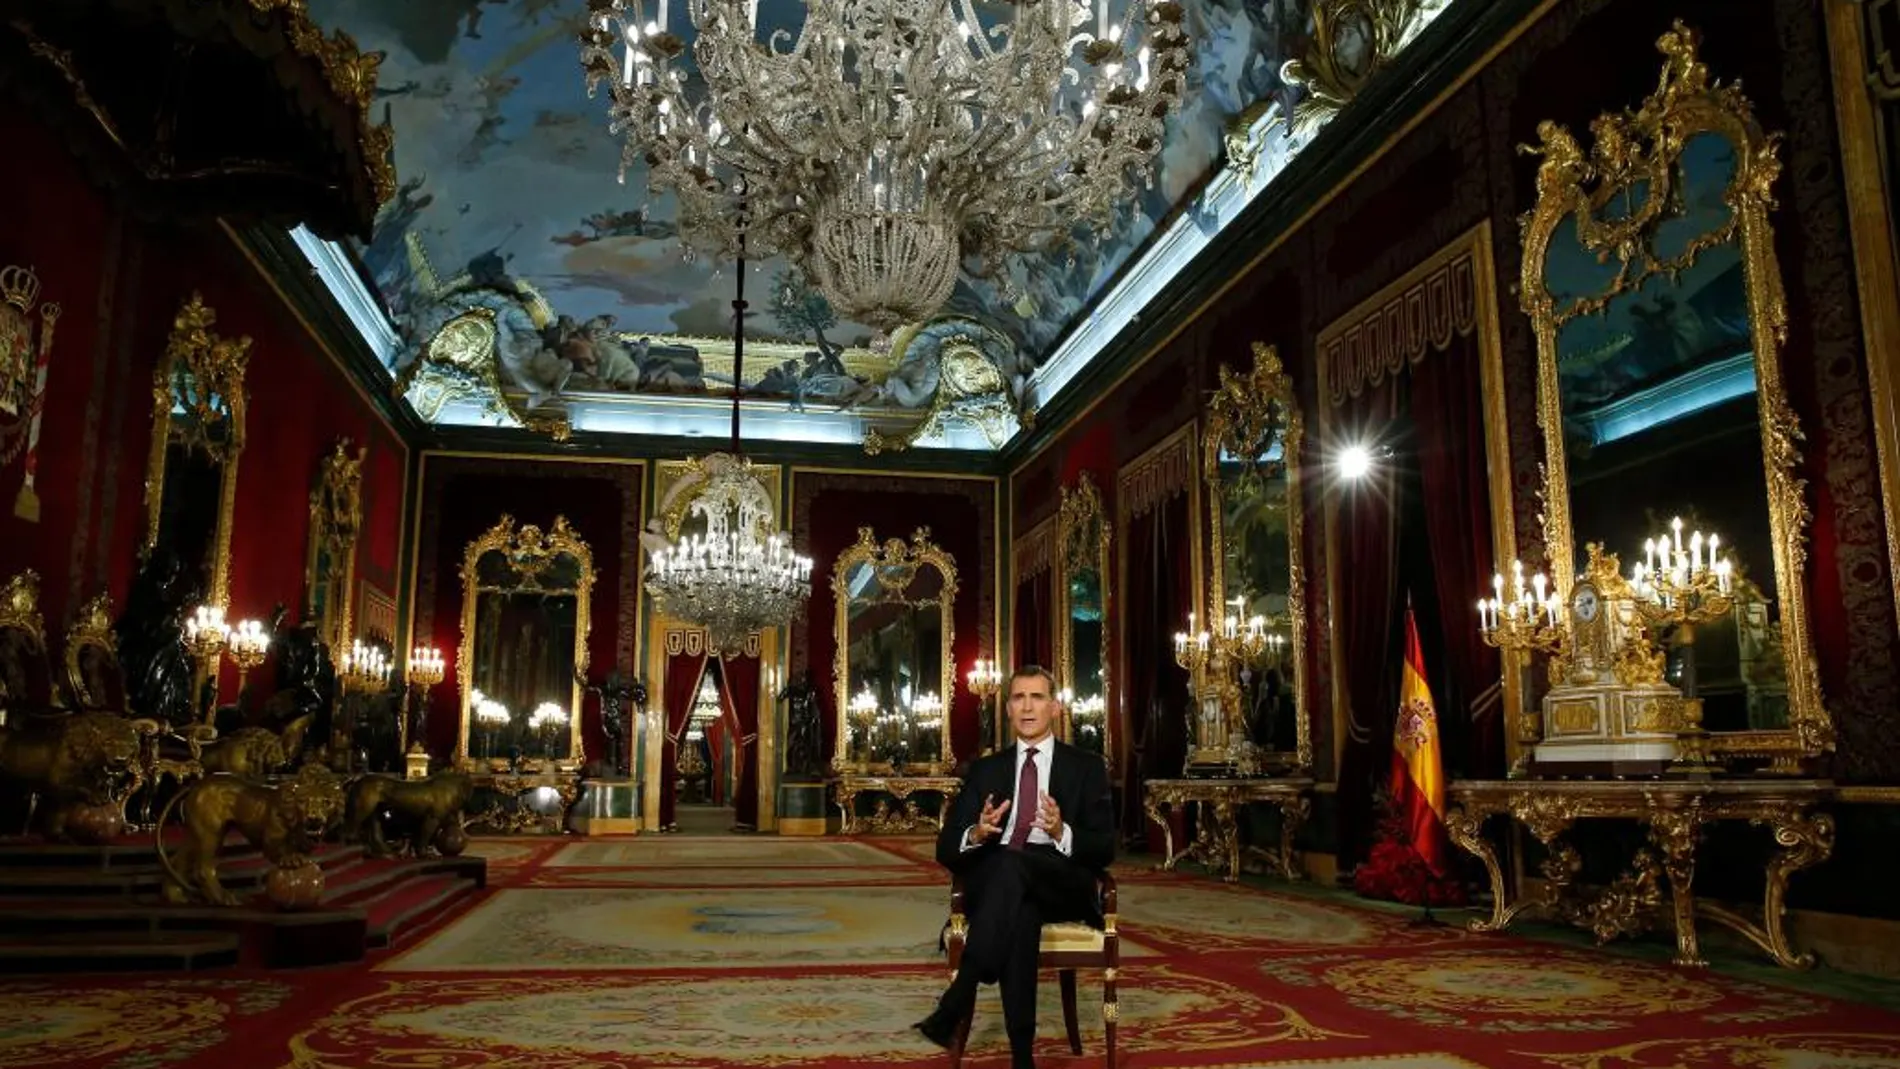 El discurso de Don Felipe fue grabado en la tarde del martes, y el Palacio de Oriente permaneció cerrado al público